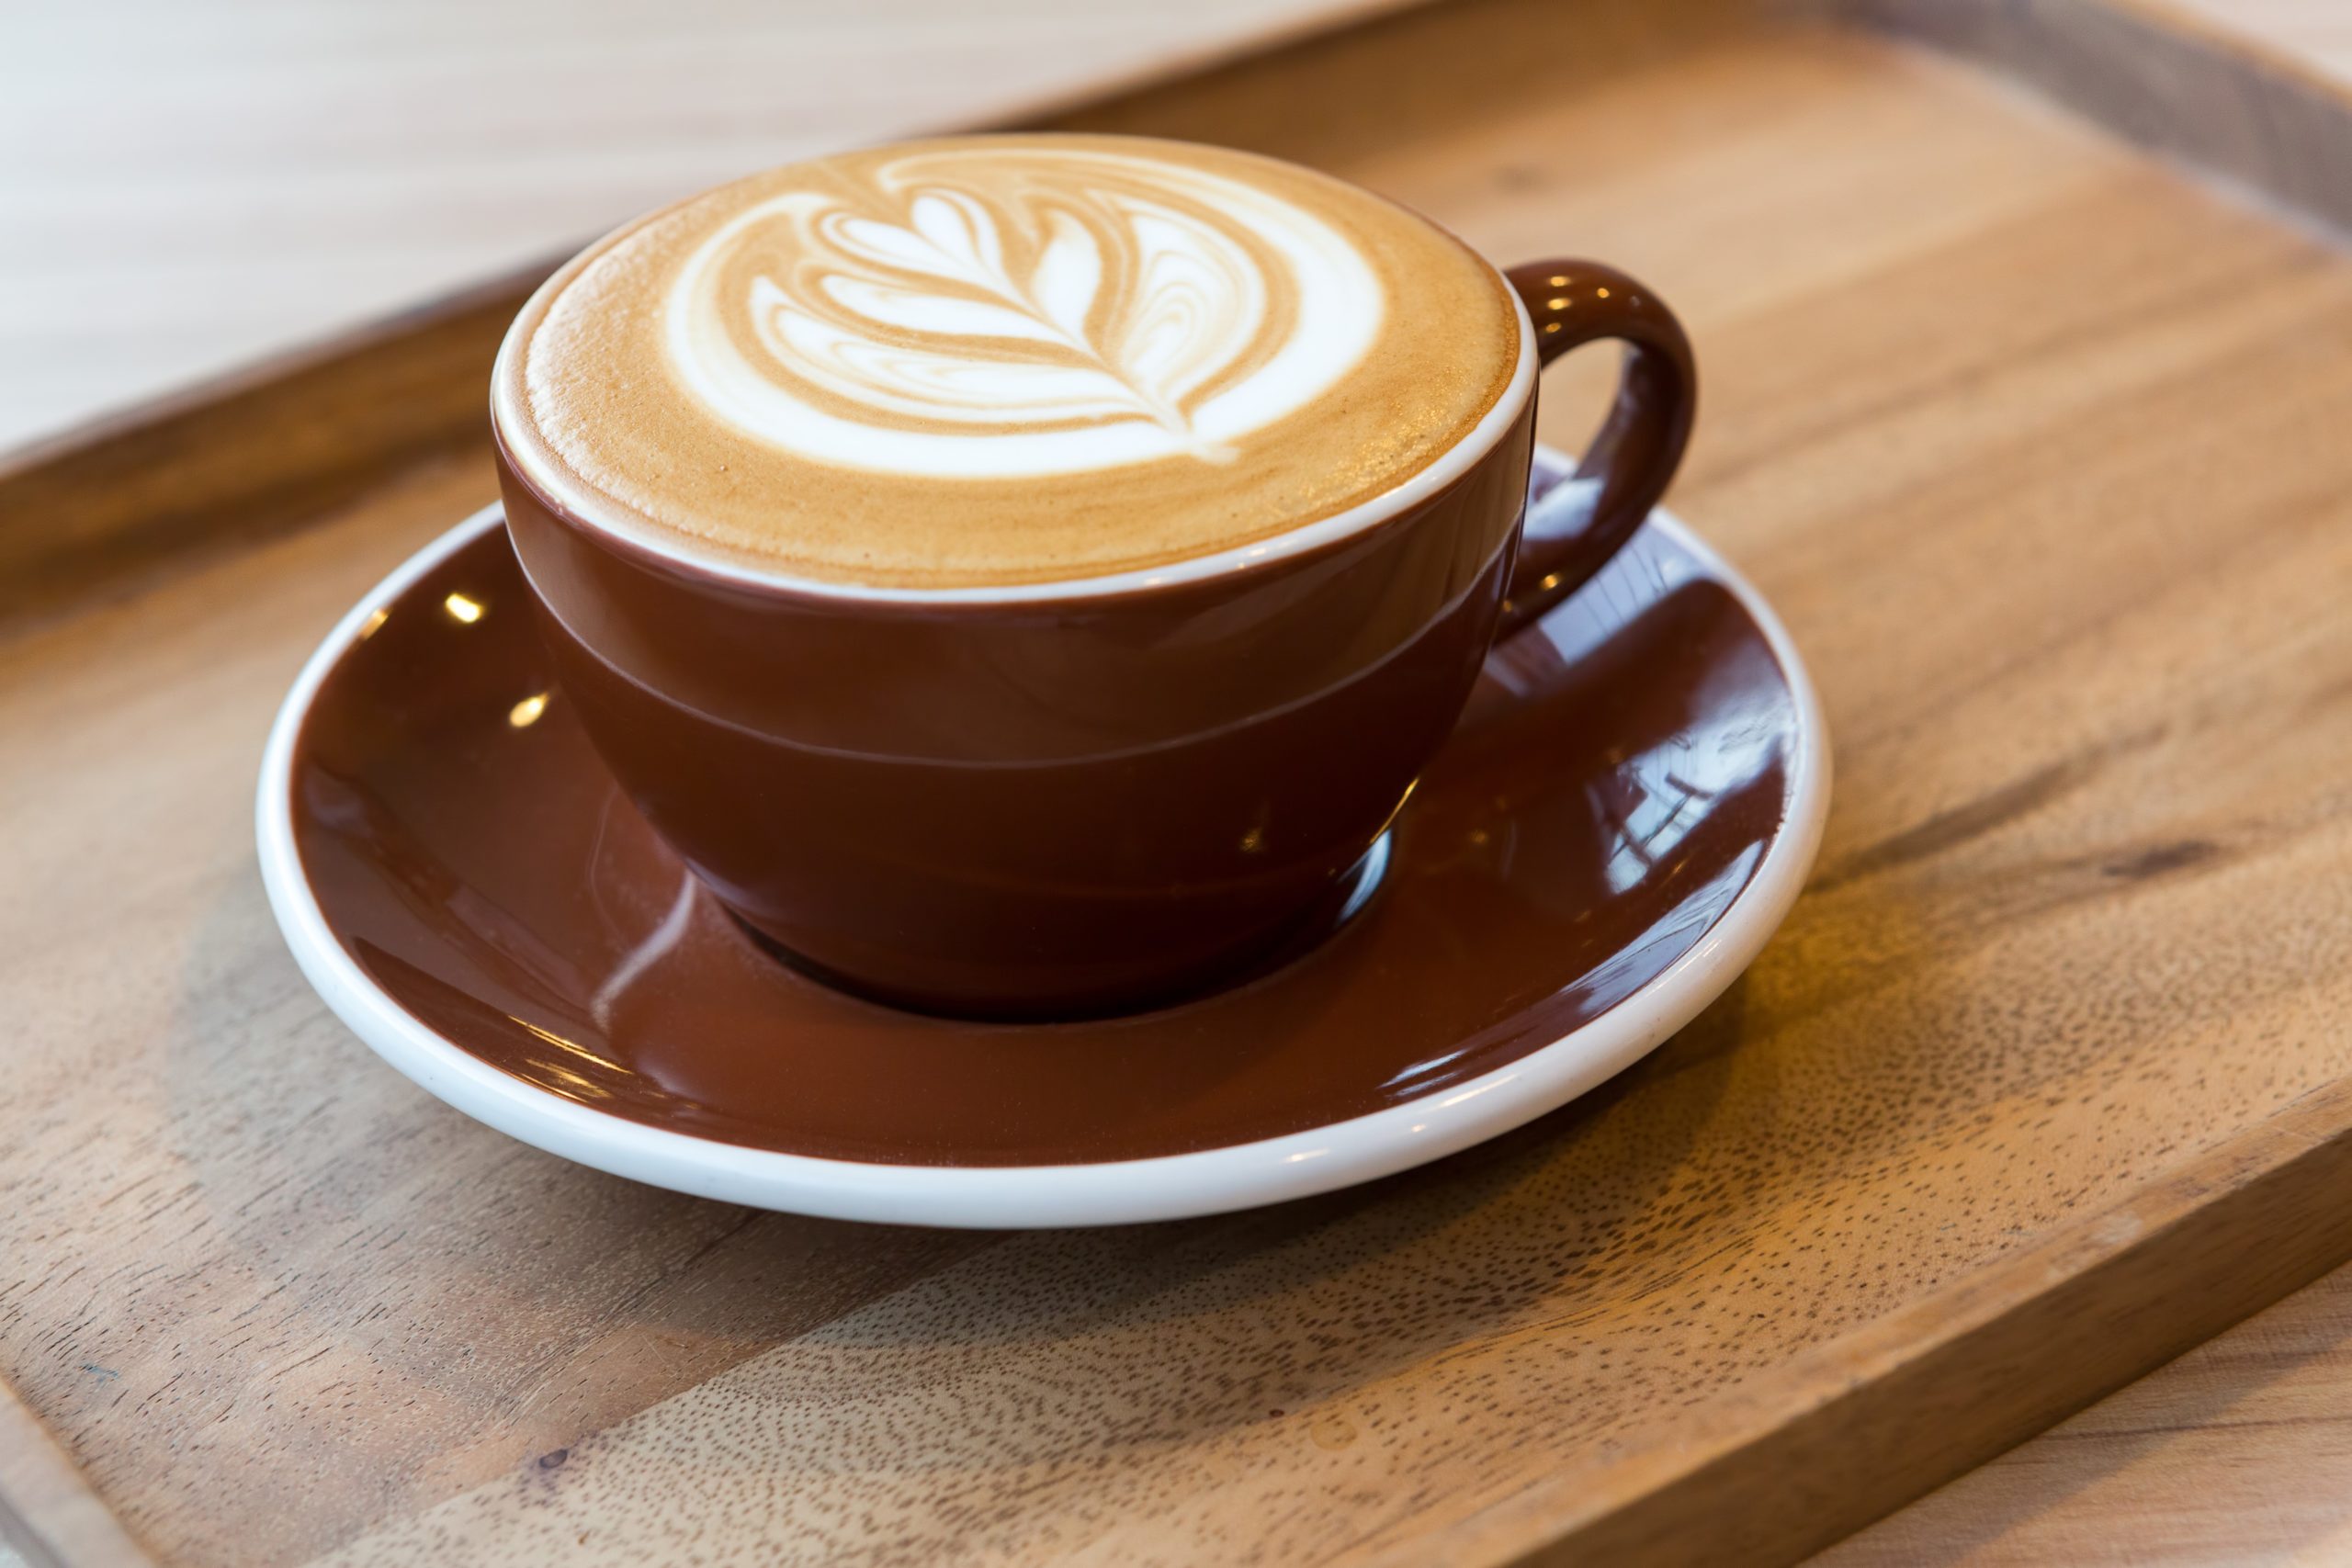 Si te encanta el cappuccino, esta es la opción más fácil y rápida de prepararlo. ¡Me encanta!